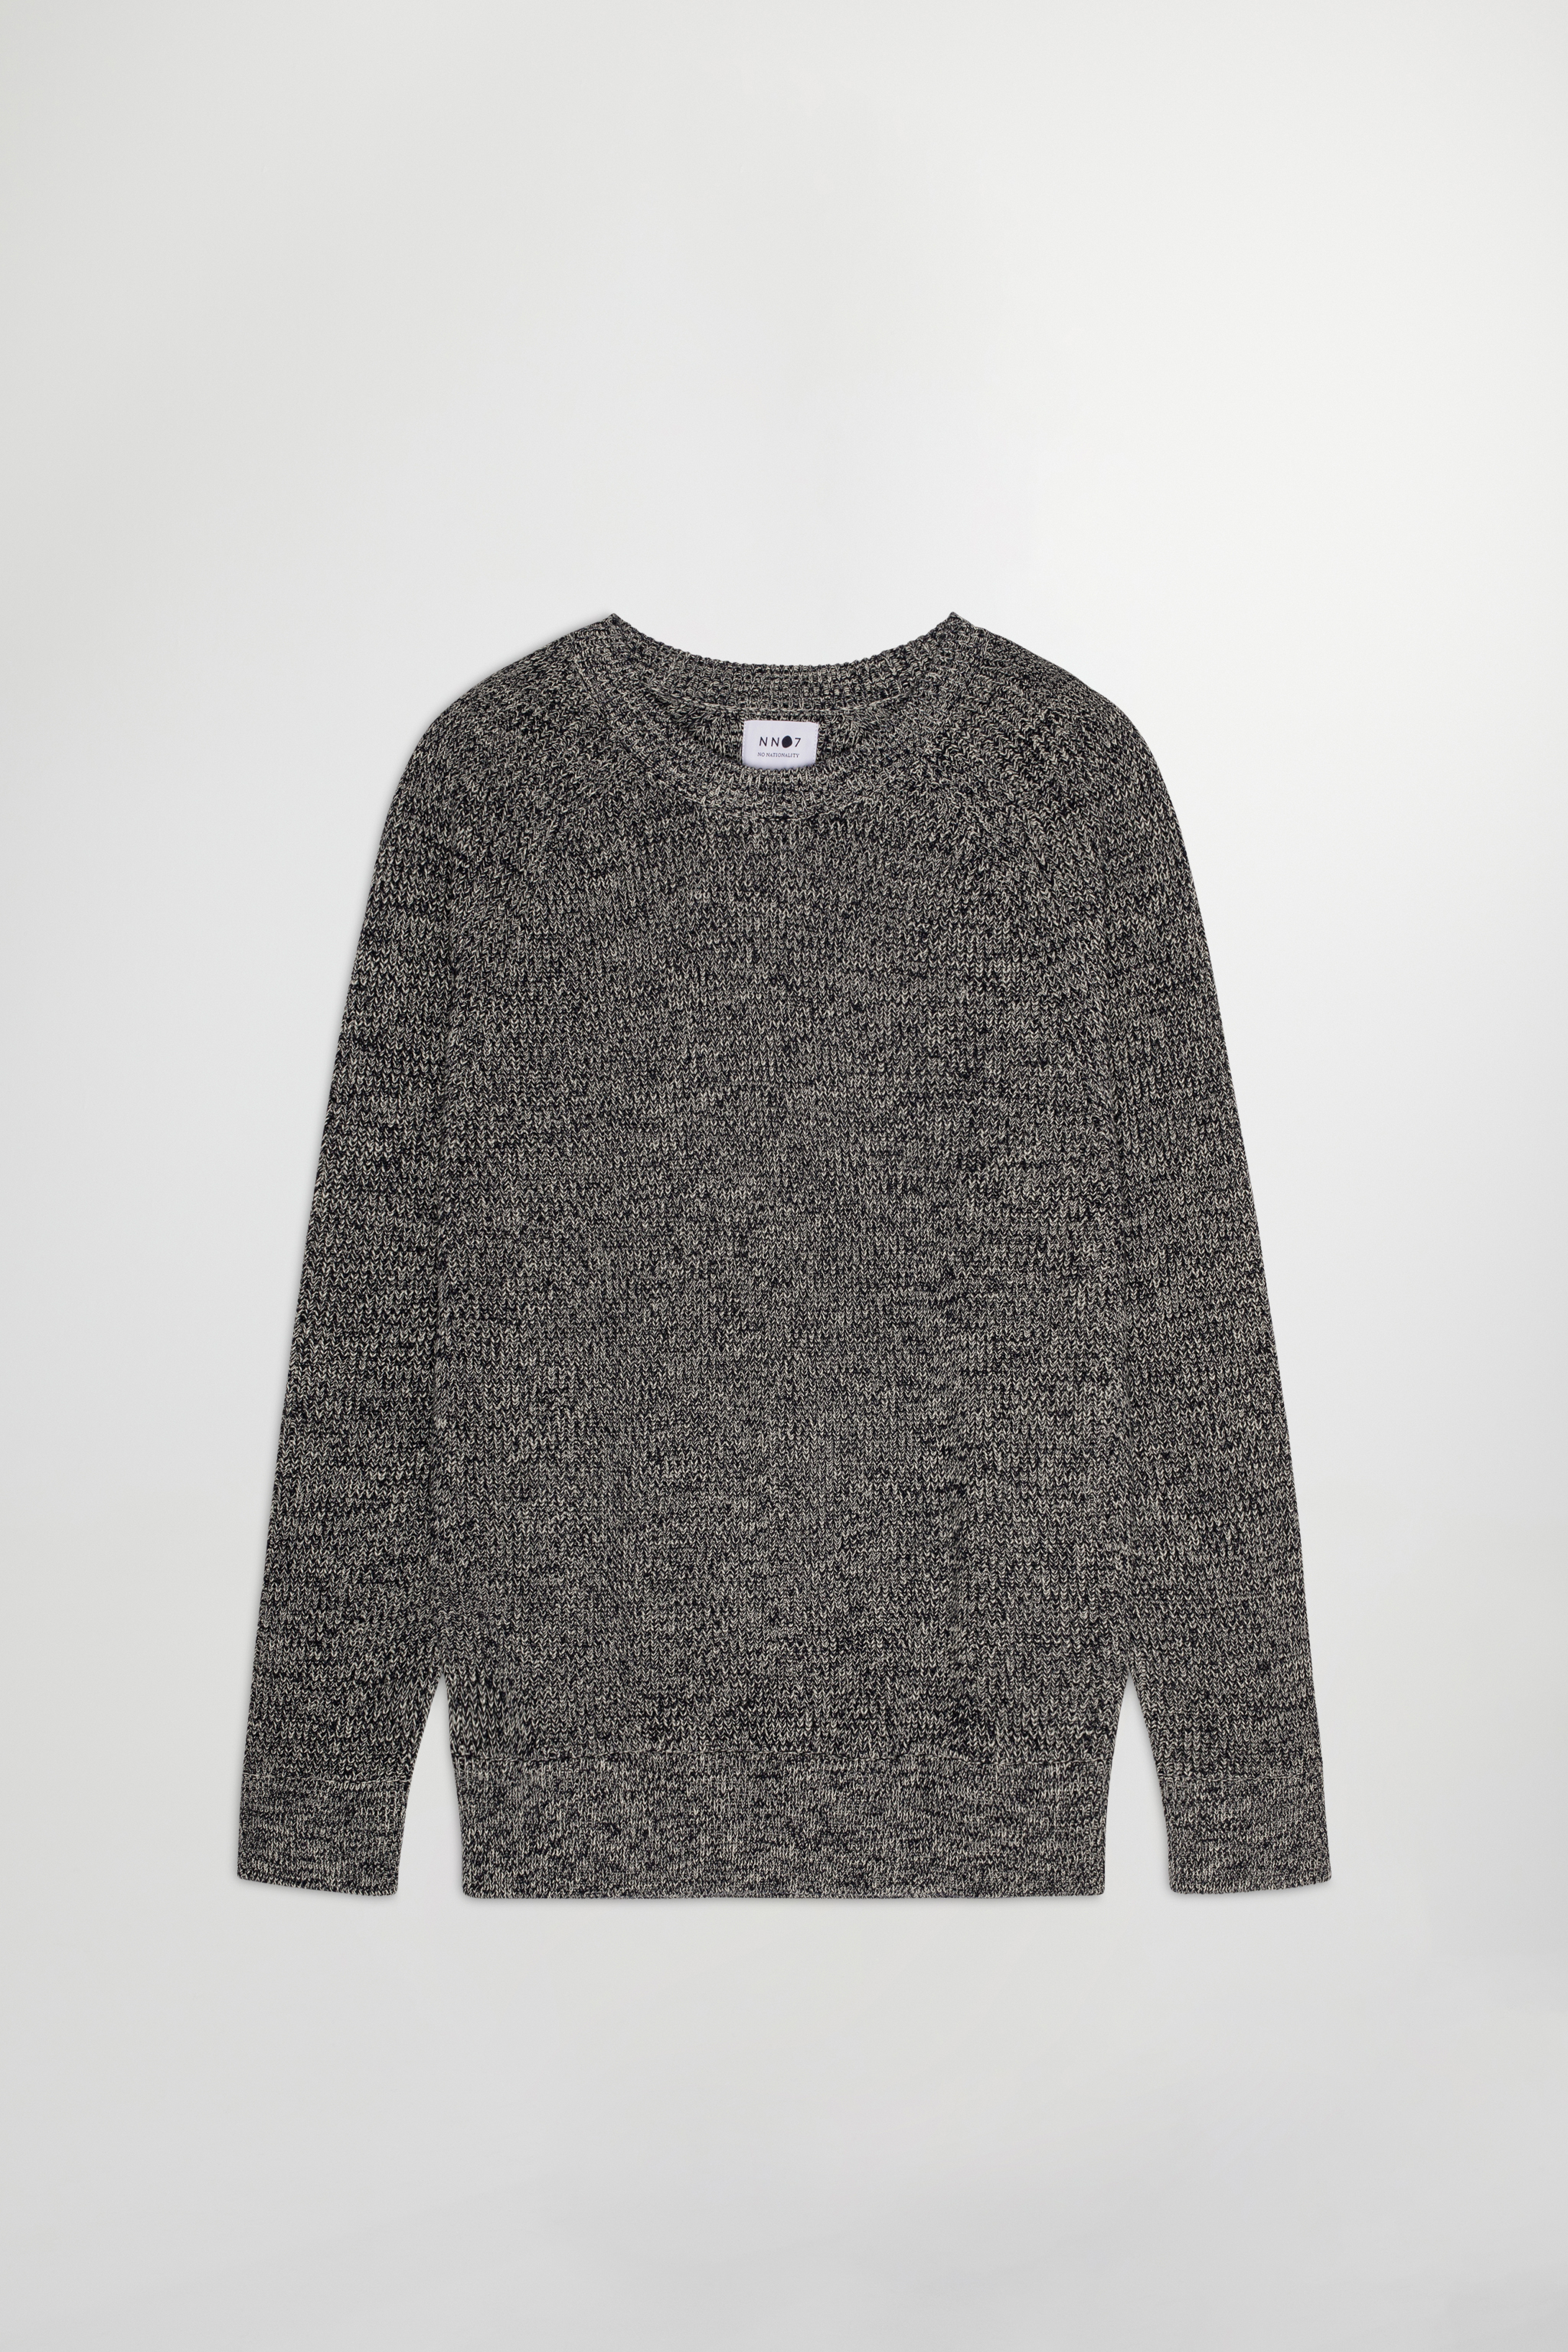 Jacobo 6470 men's sweater - Blue - Buy online at NN.07®